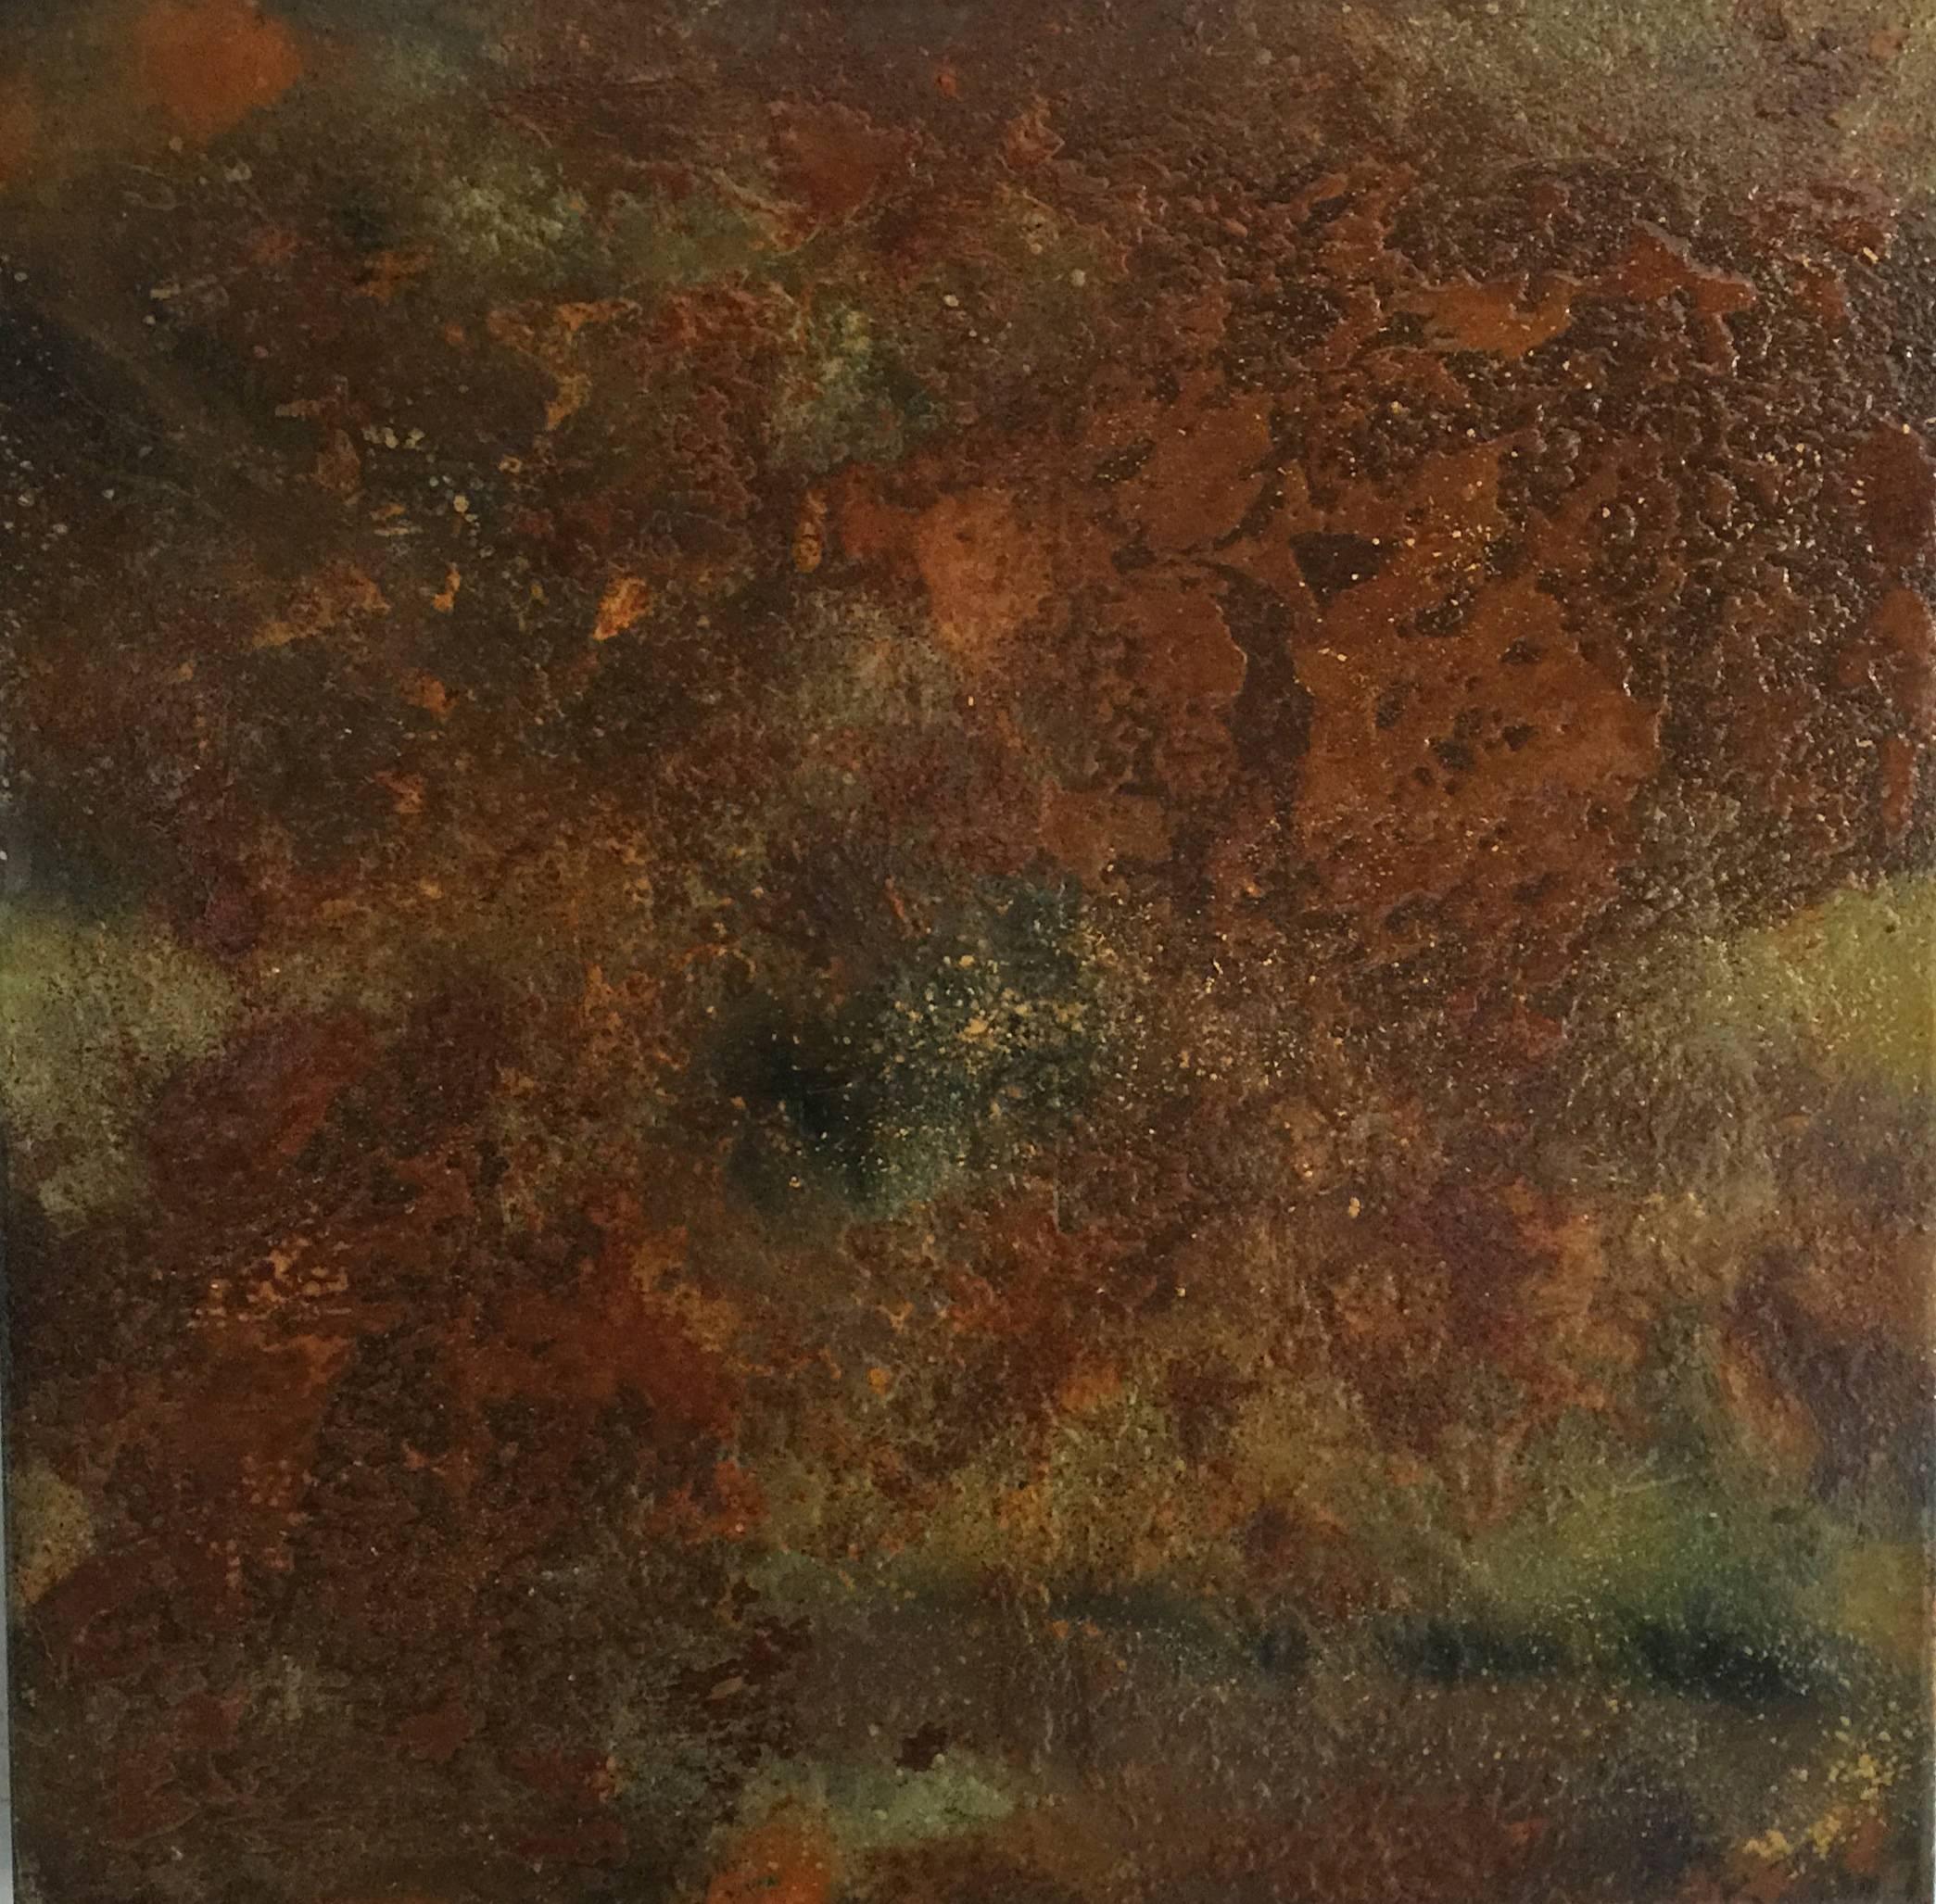 Abstract Painting Bruce Murphy - Objet adulte n° 16 (peinture abstraite à l'émail vert et rouille sur métal)